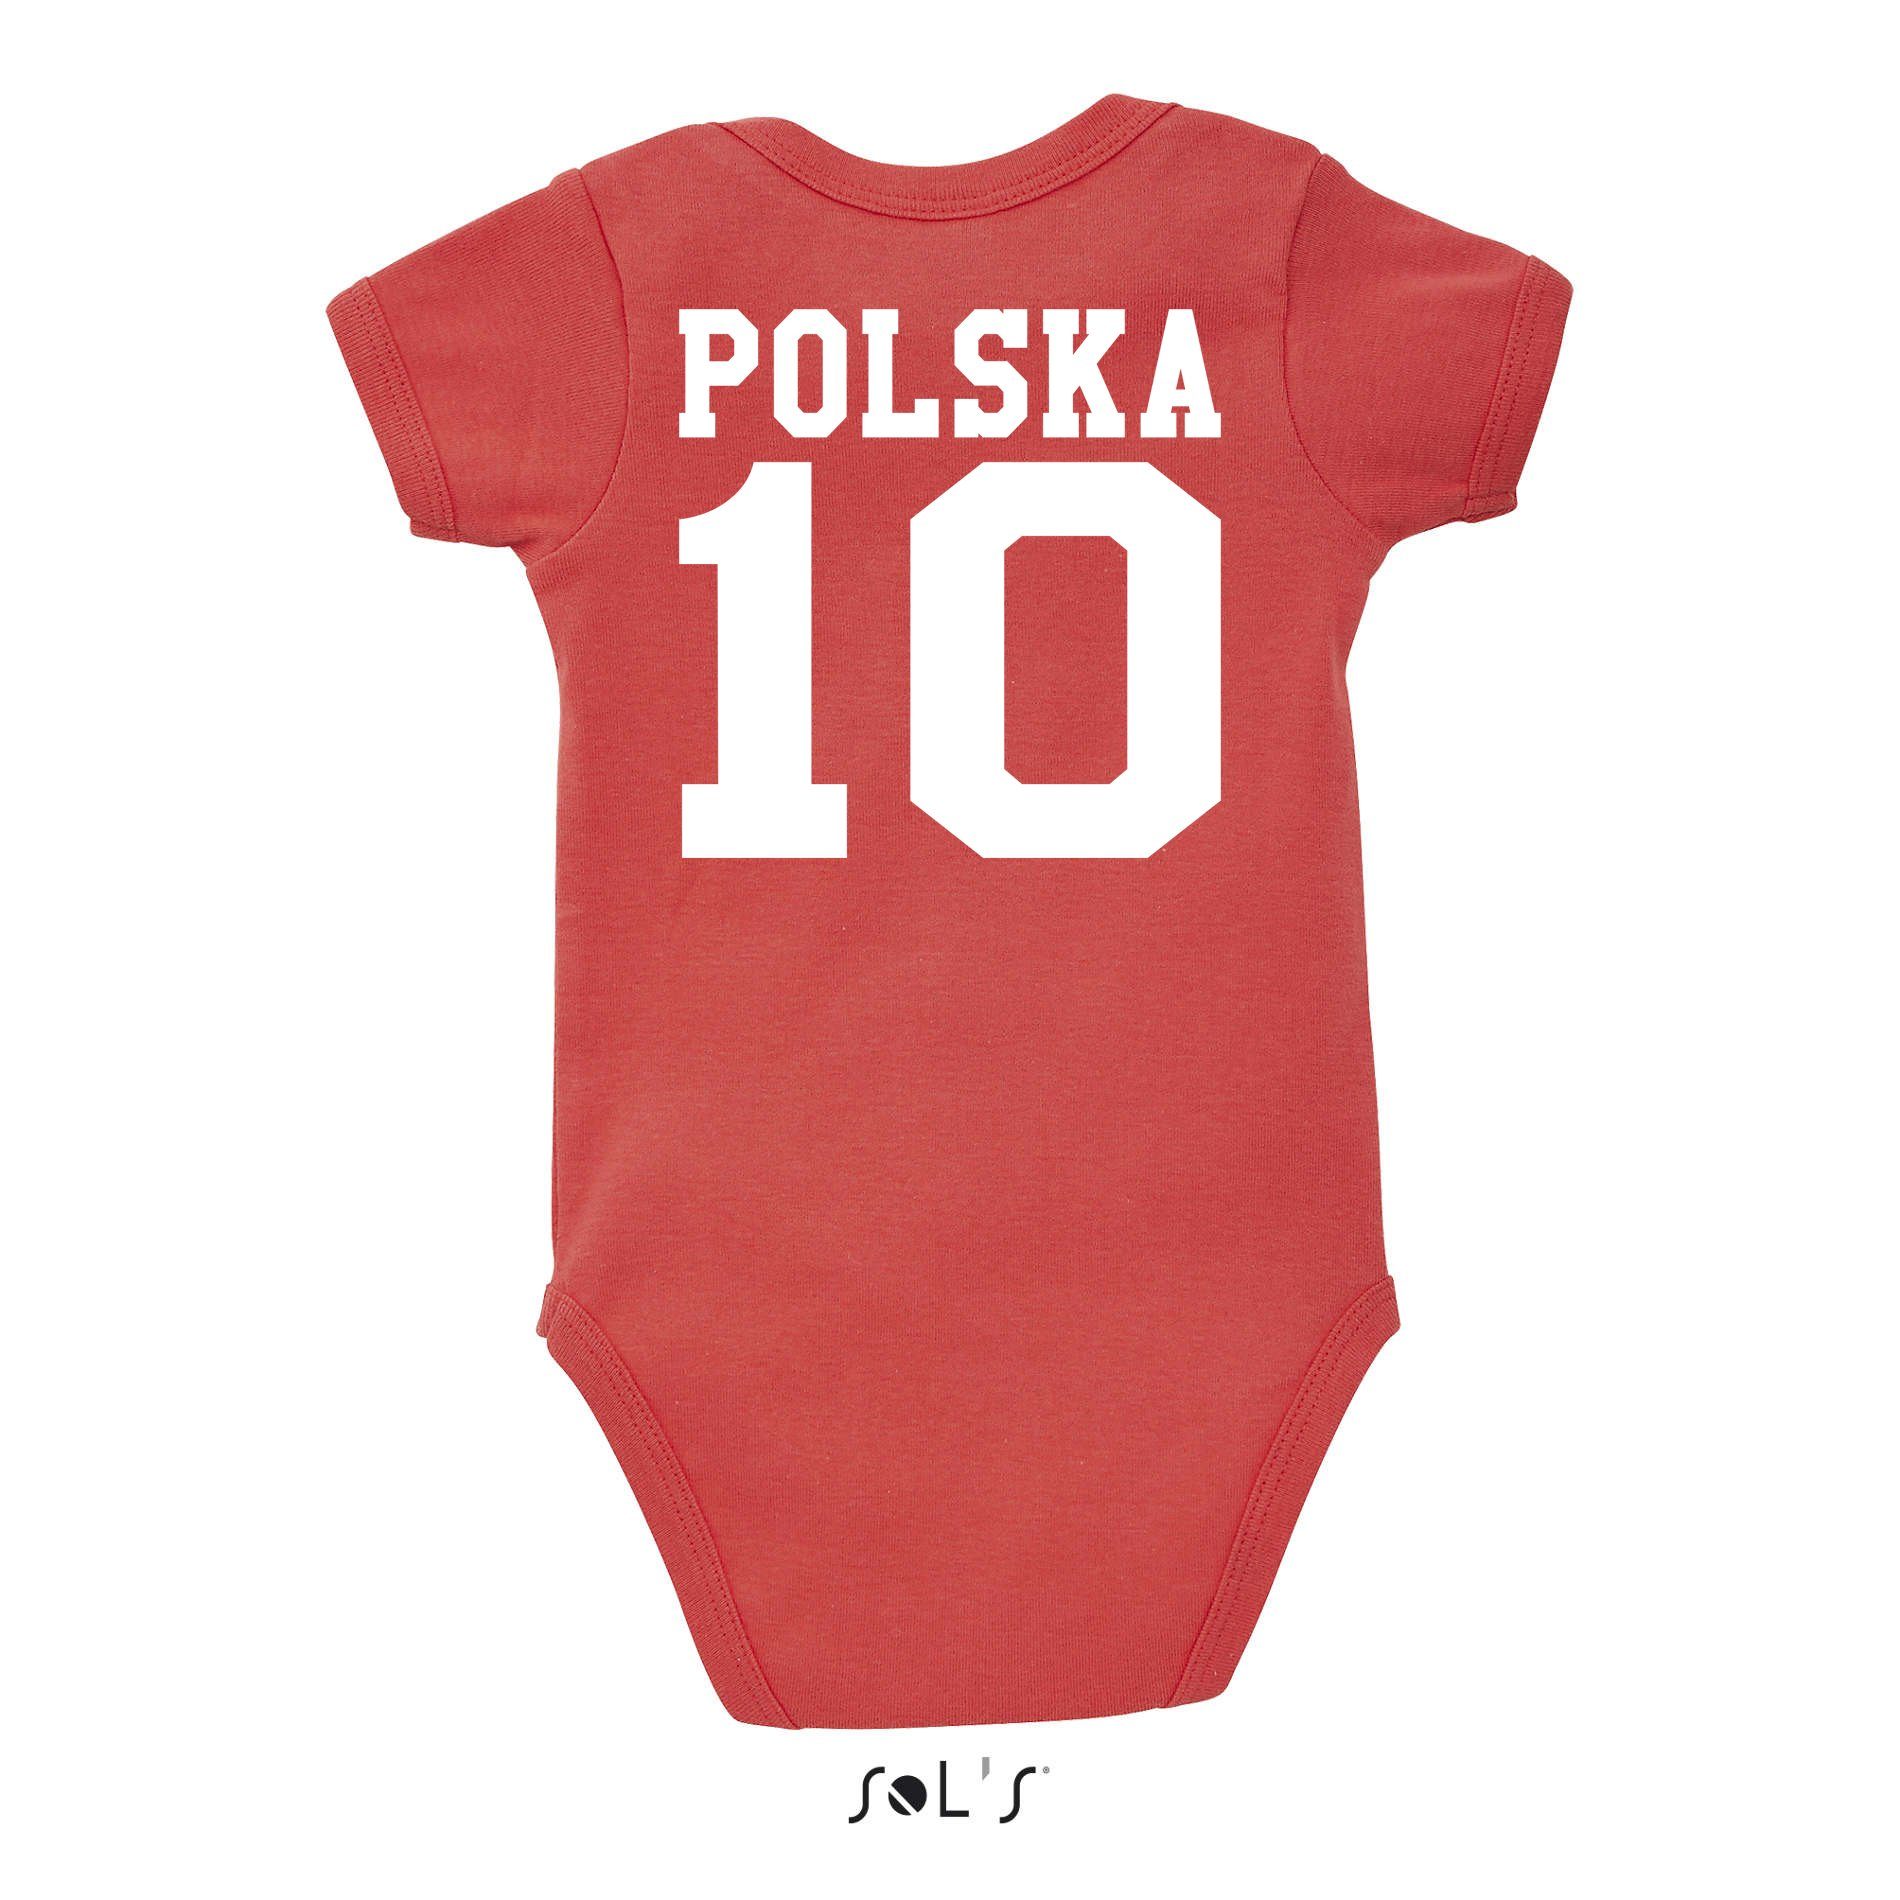 Sport Polska Fußball Weiss/Rot Blondie & Baby Kinder Trikot WM Europa Brownie EM Meister Strampler Polen